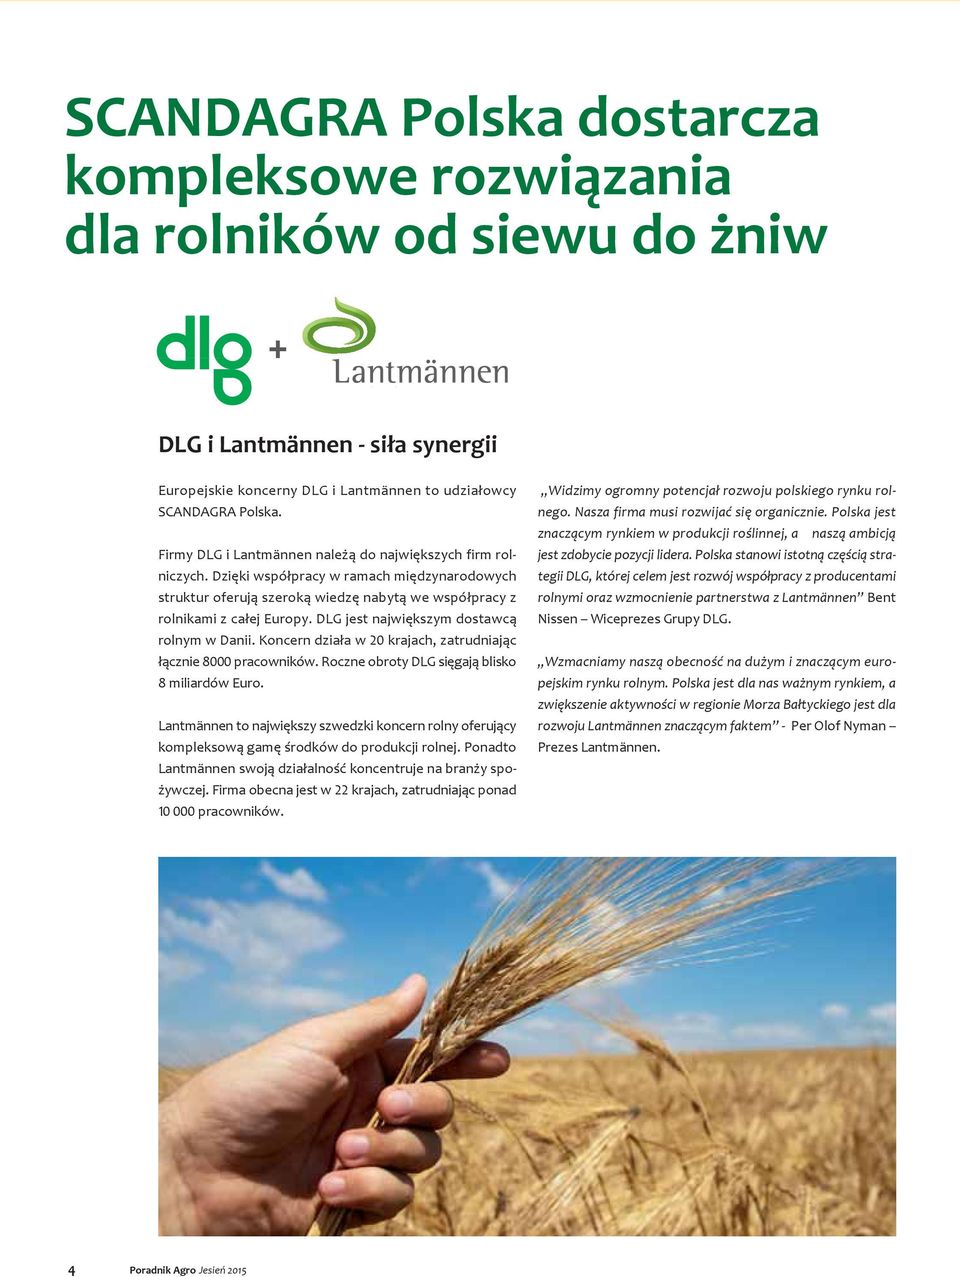 DLG jest największym dostawcą rolnym w Danii. Koncern działa w krajach, zatrudniając łącznie 8 pracowników. Roczne obroty DLG sięgają blisko 8 miliardów Euro.